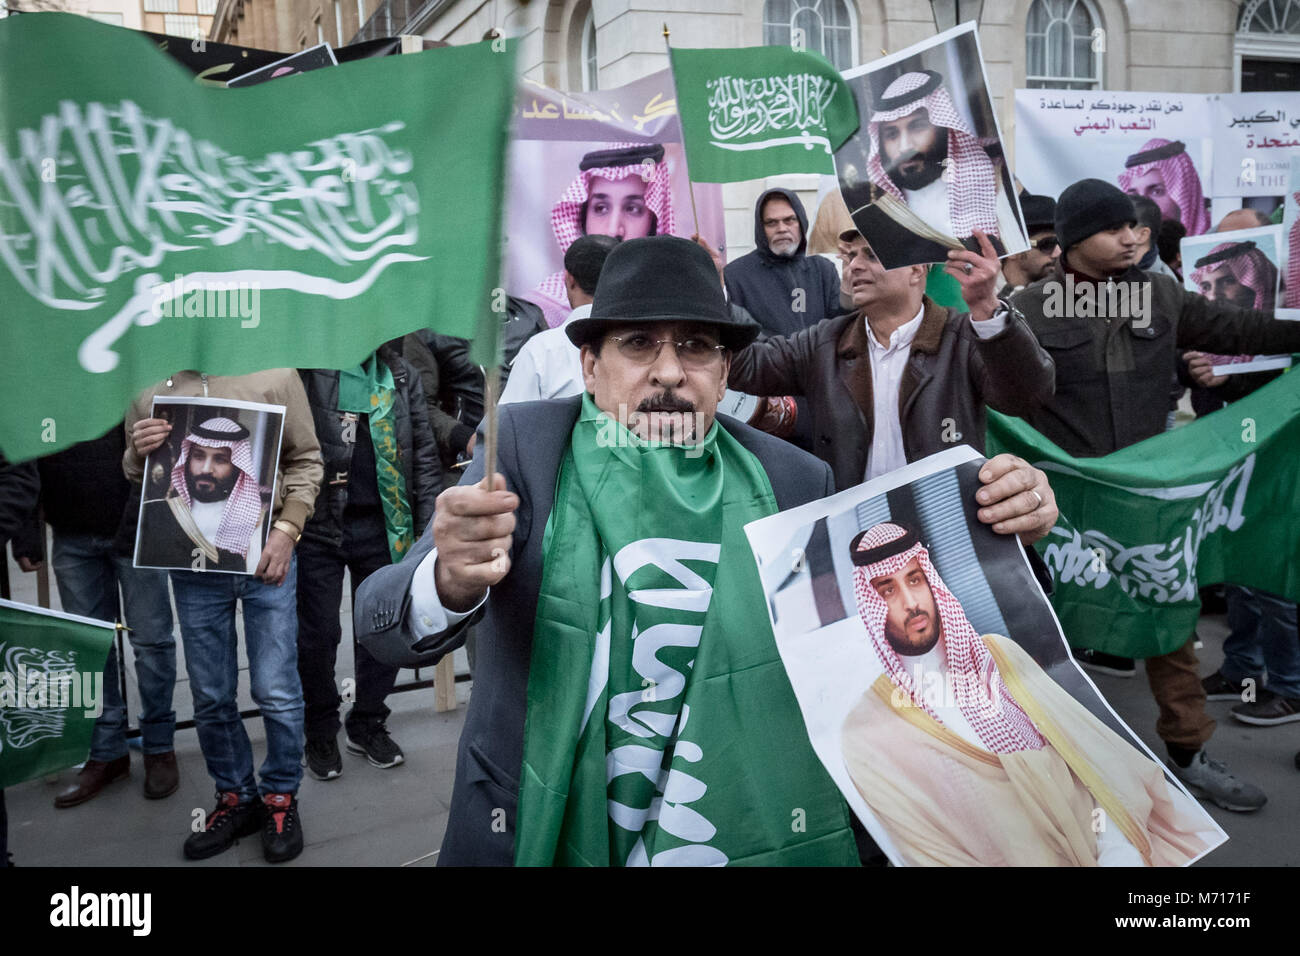 Londres, Royaume-Uni. 7 mars, 2018. British saoudiens fêter l'arrivée du prince saoudien Mohammad bin Salman au 10 Downing Street comme il se réunit avec le Premier ministre britannique Theresa de mai dans le cadre d'une visite de trois jours au Royaume-Uni. Crédit : Guy Josse/Alamy Live News Banque D'Images